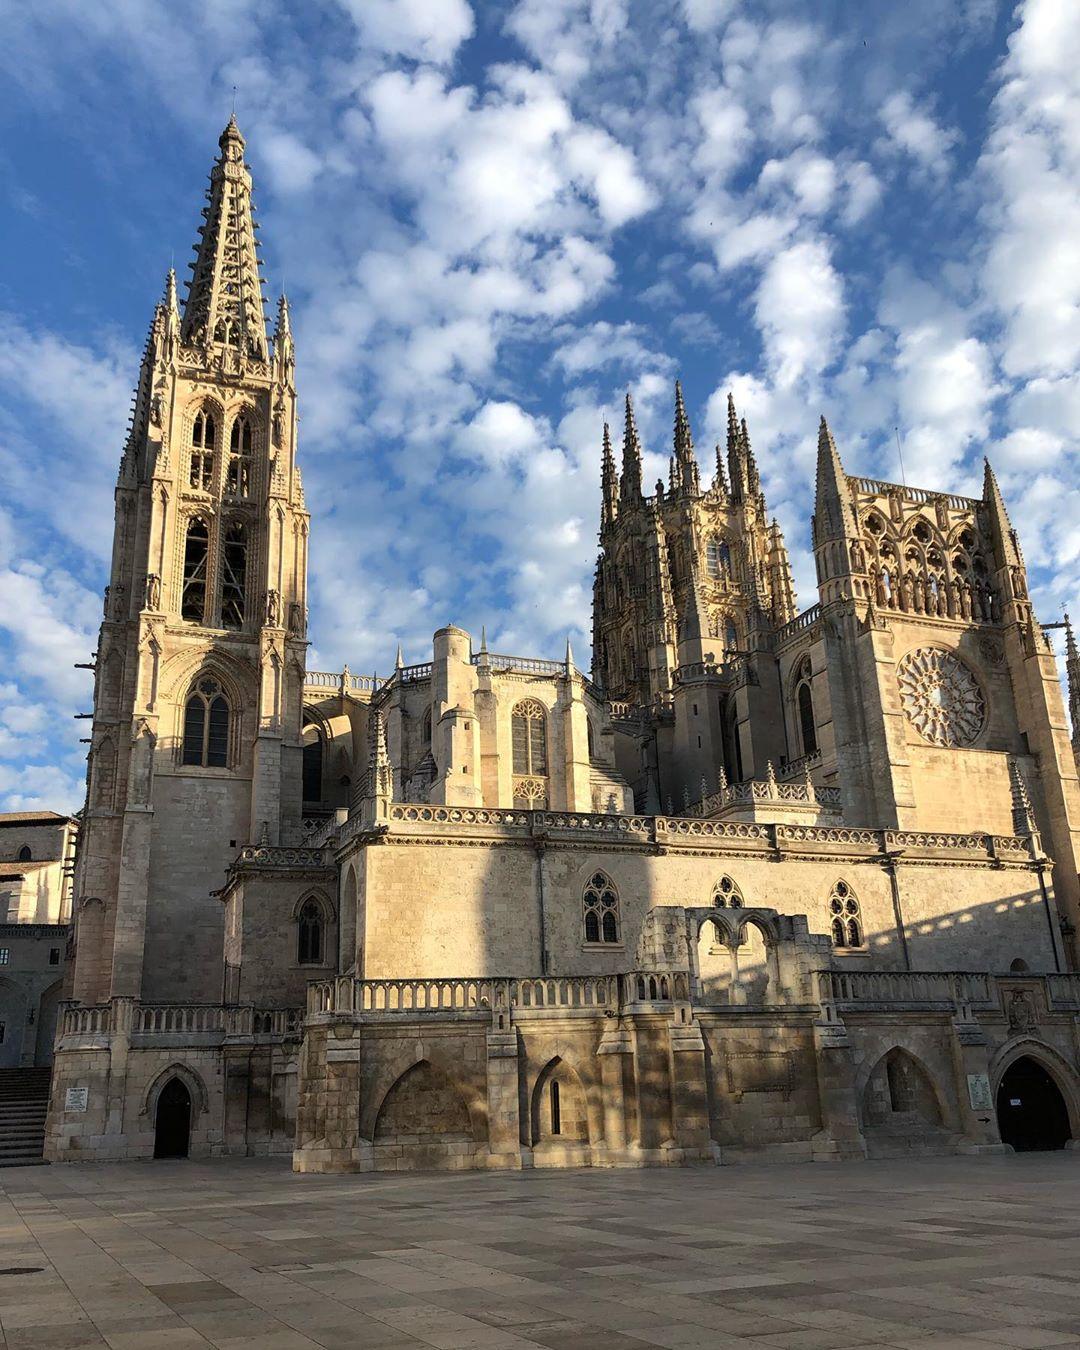 布尔戈斯大教堂—西班牙的文化遗产  布尔戈斯大教堂是西班牙排名第三的重要教堂，也是唯一被当作文化遗产